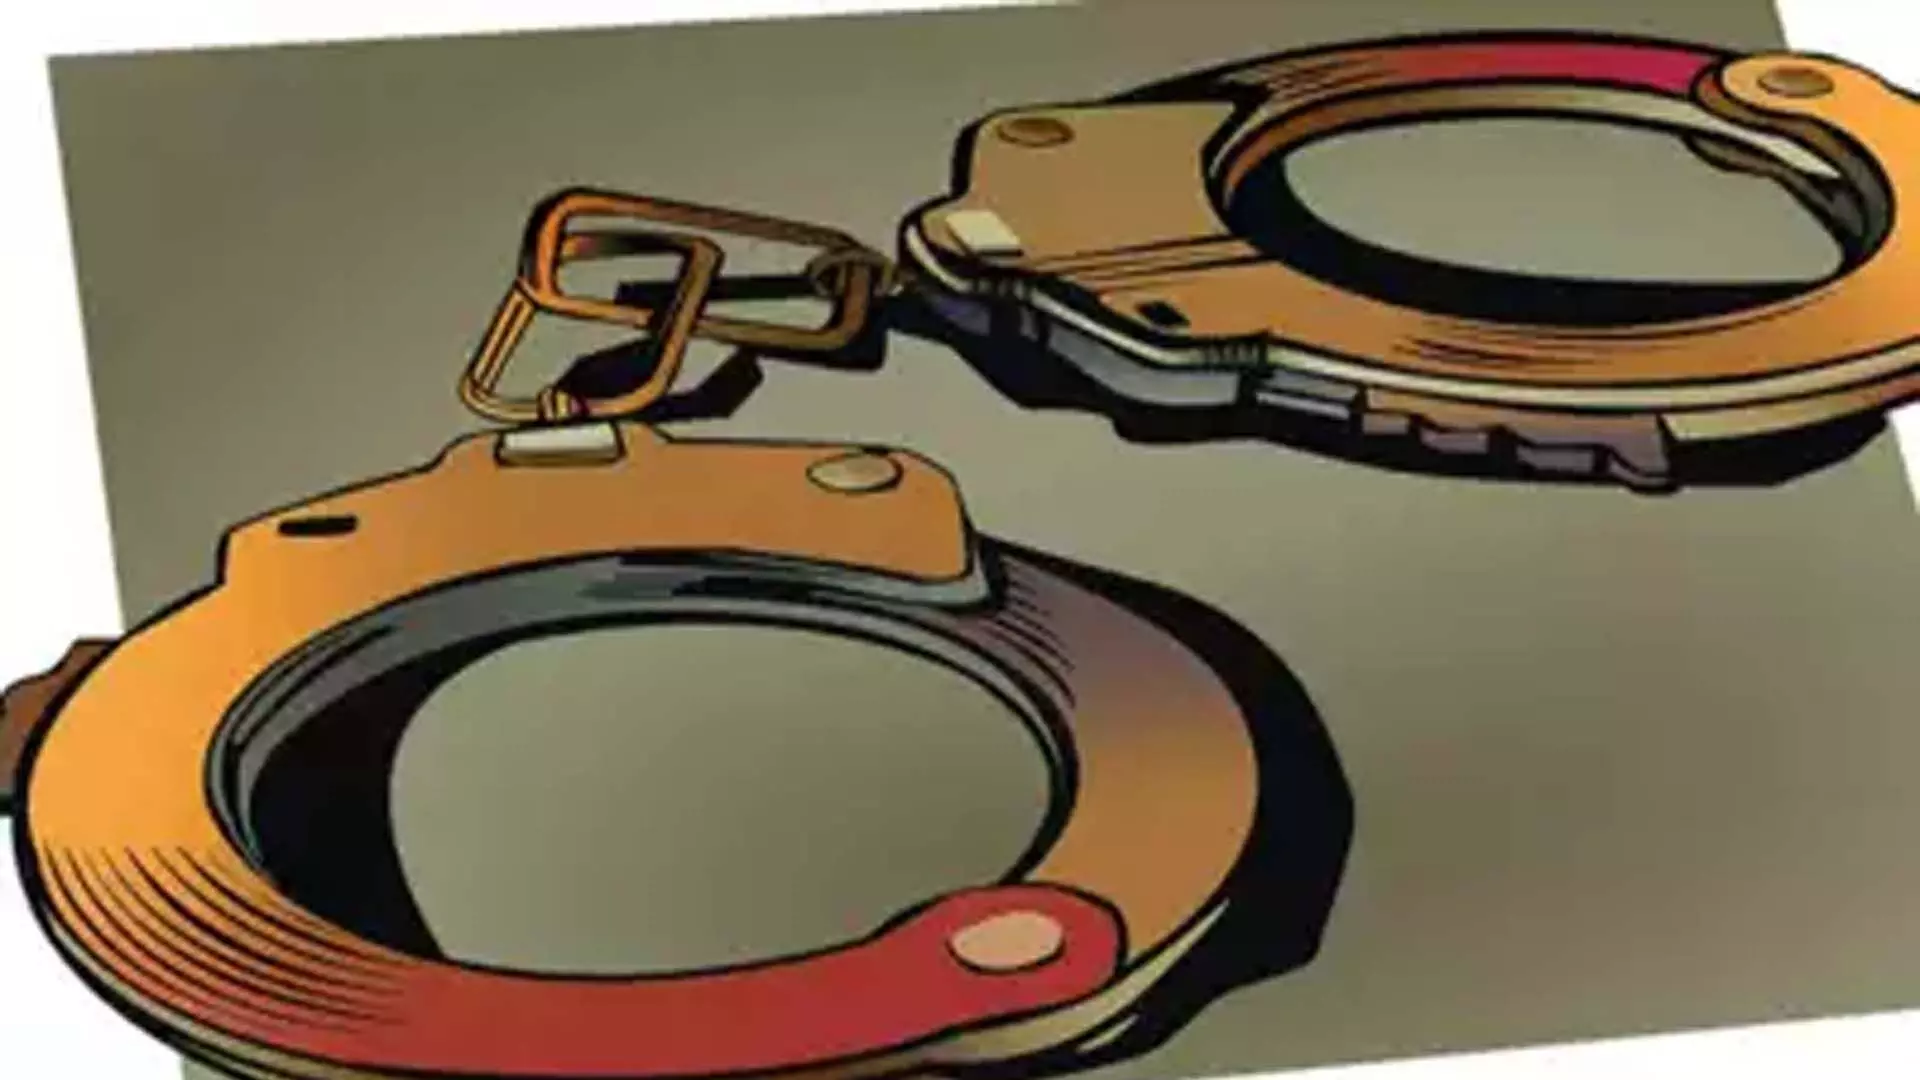 Maharashtra News: आबकारी विभाग ने एसयूवी से एक करोड़ रुपये का गांजा जब्त किया, दो लोग गिरफ्तार